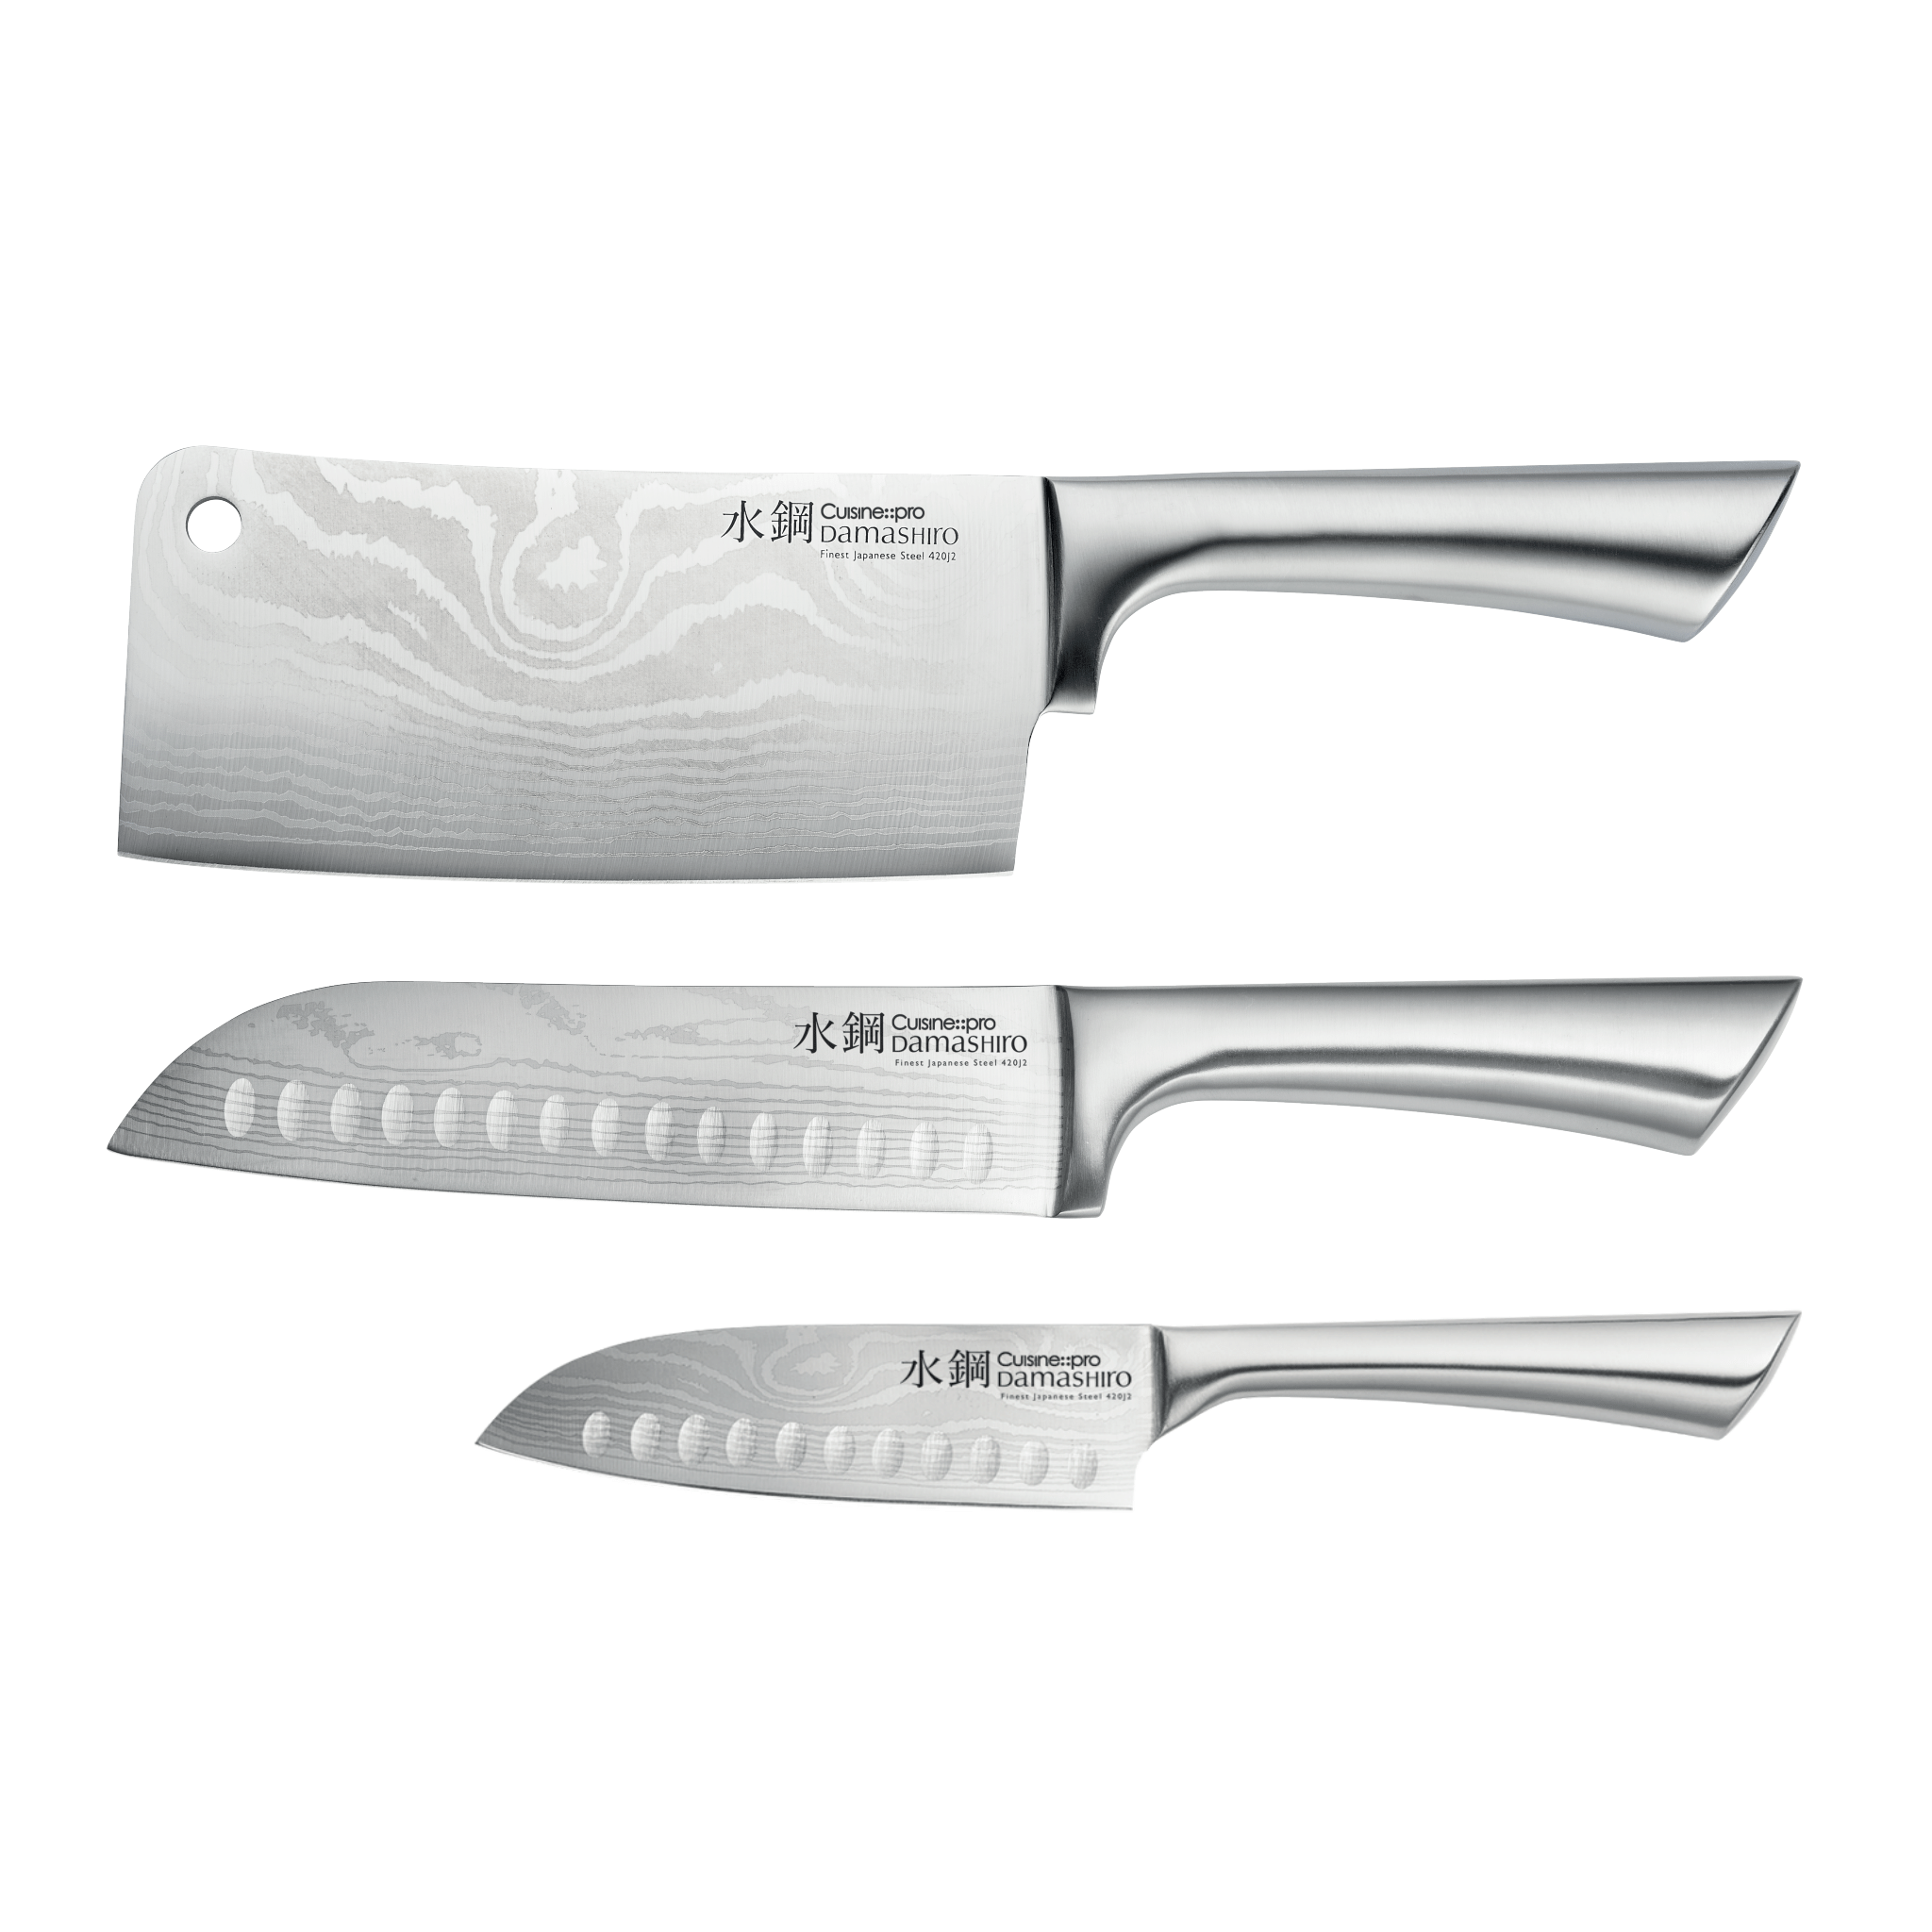 Cuisine::pro® Damashiro® Ultimate Ensemble de 3 couteaux - THE